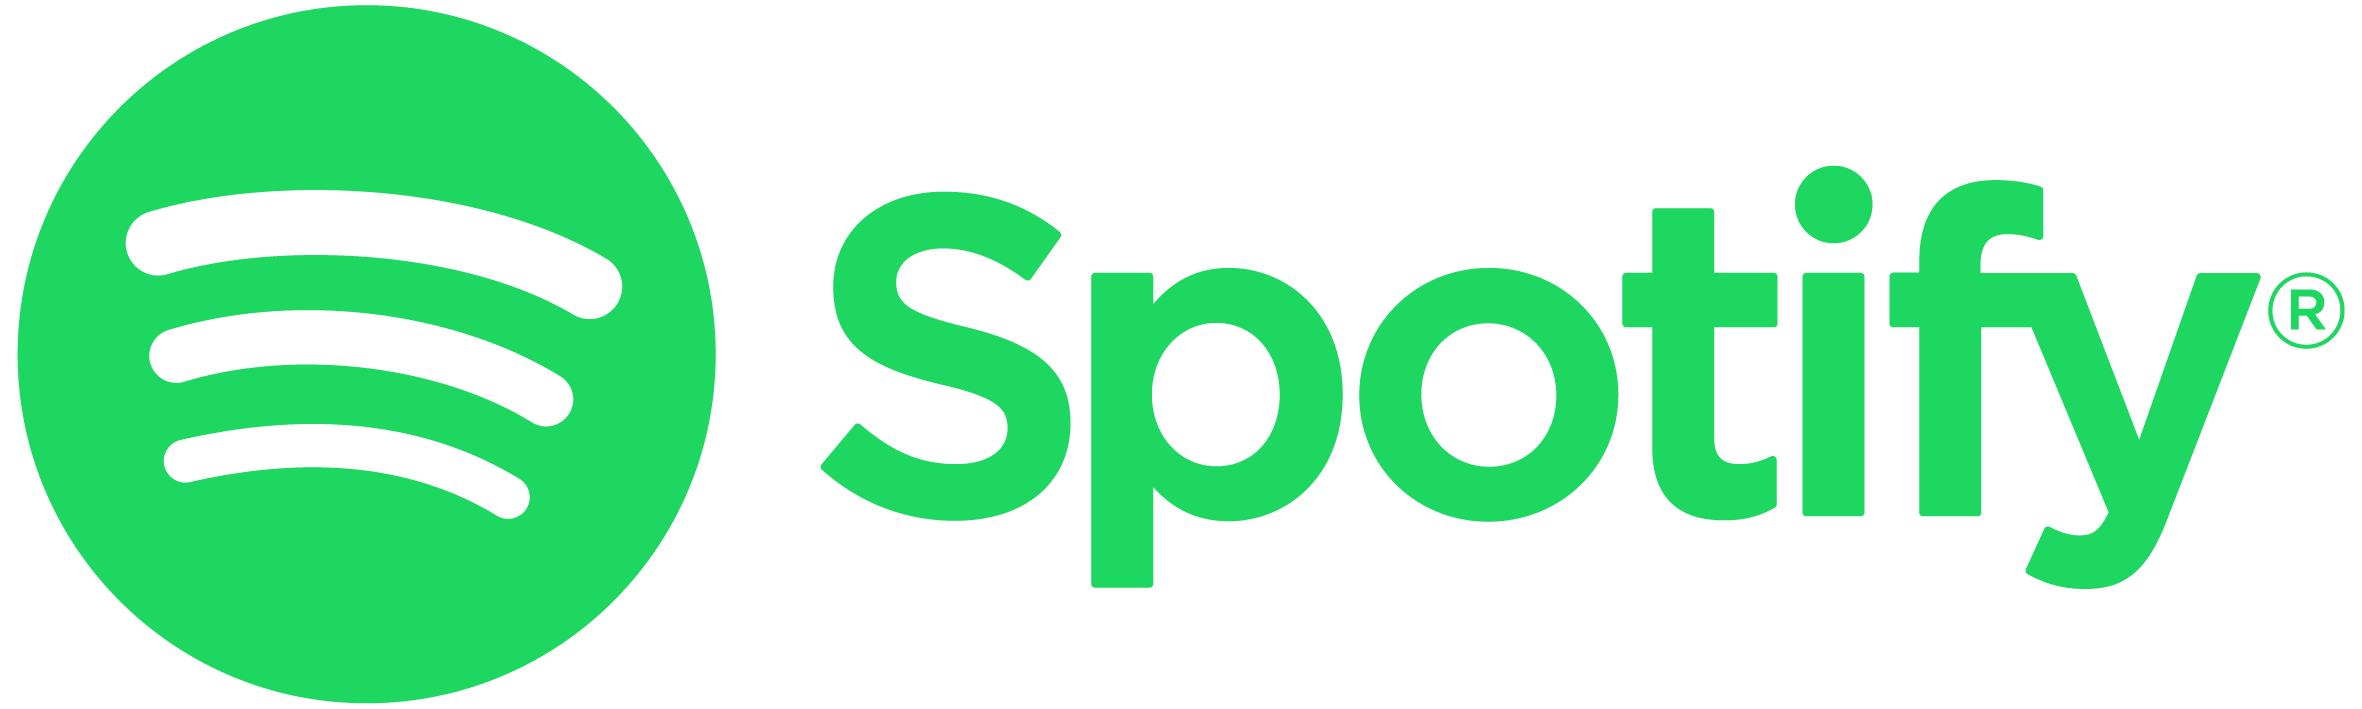 Spotify green logo.